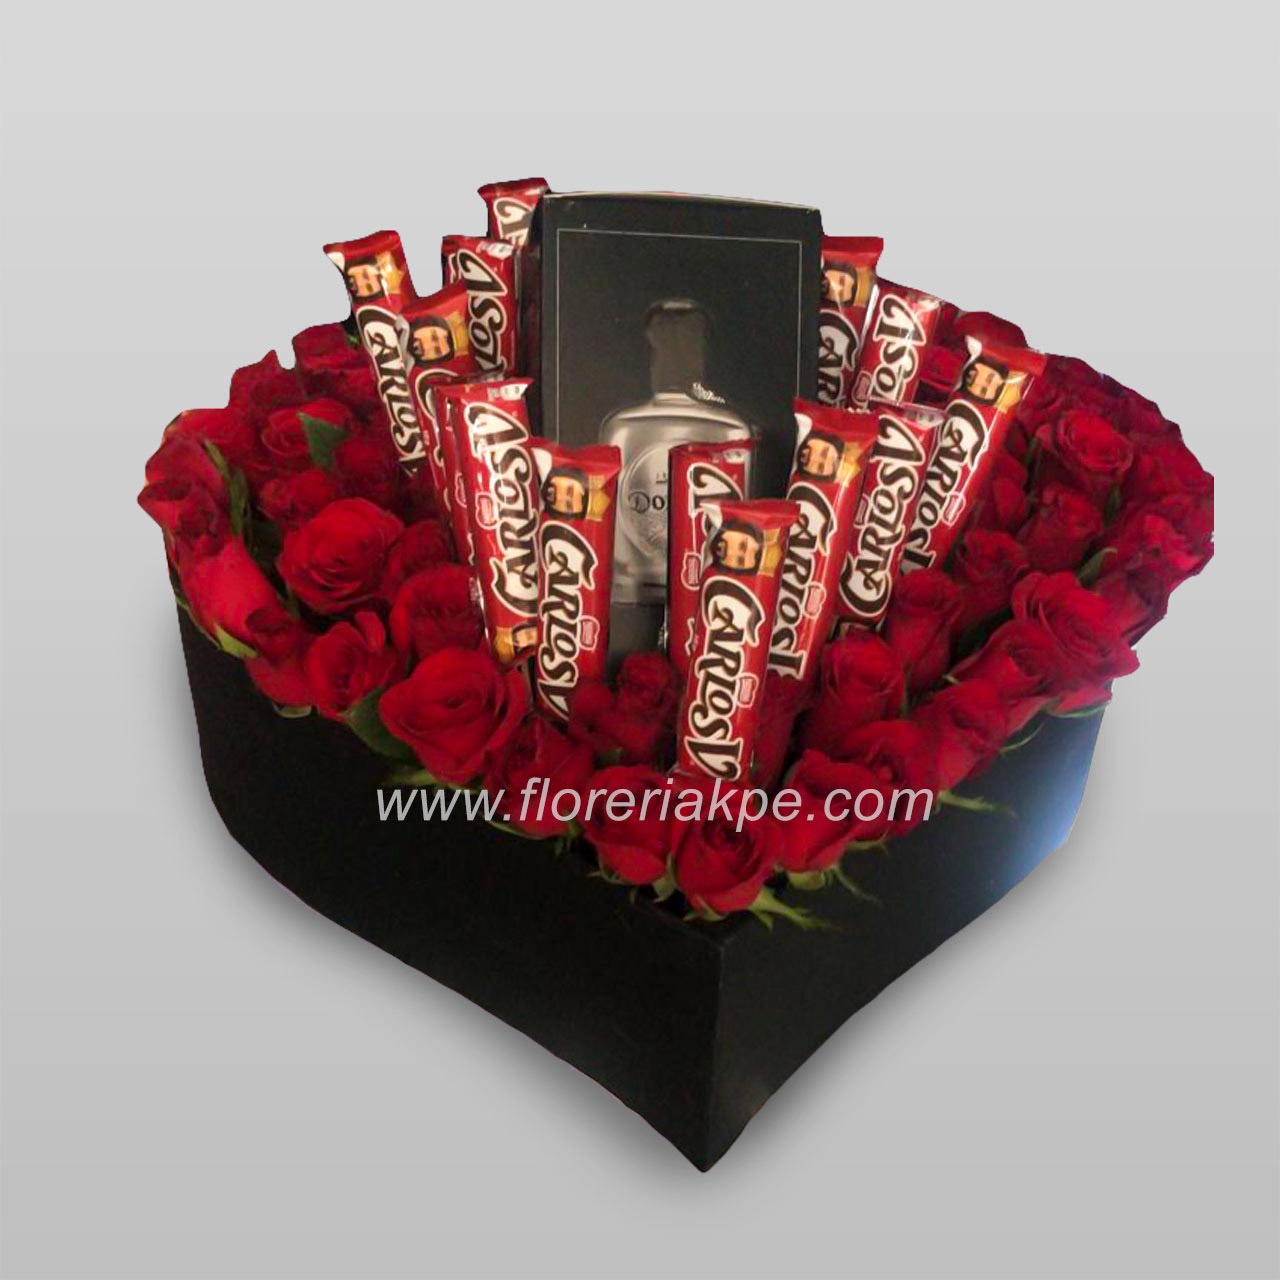 Corazón de rosas con chocolates y botella - Florerías en Guadalajara, envia  flores a domicilio, Florería KPE